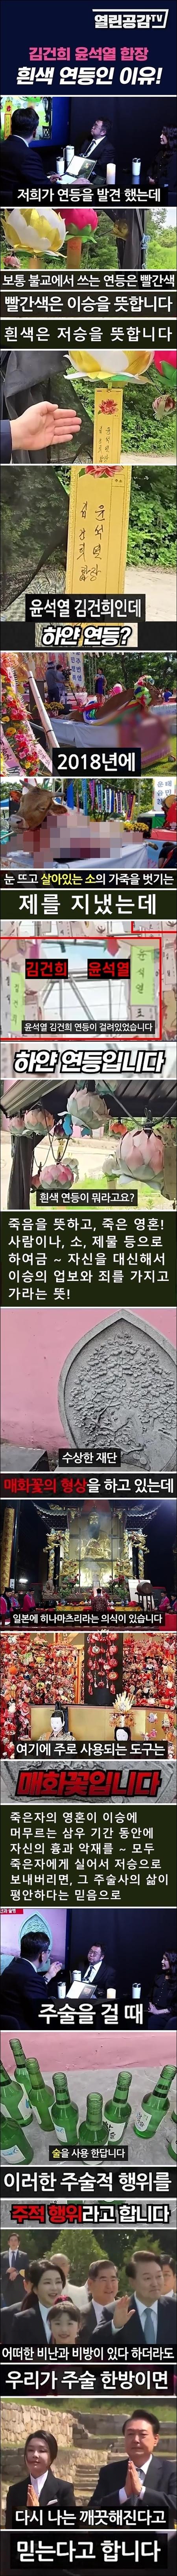 굥산주의 사이비, 윤석열 김건희 연등 하얀색(소).jpg